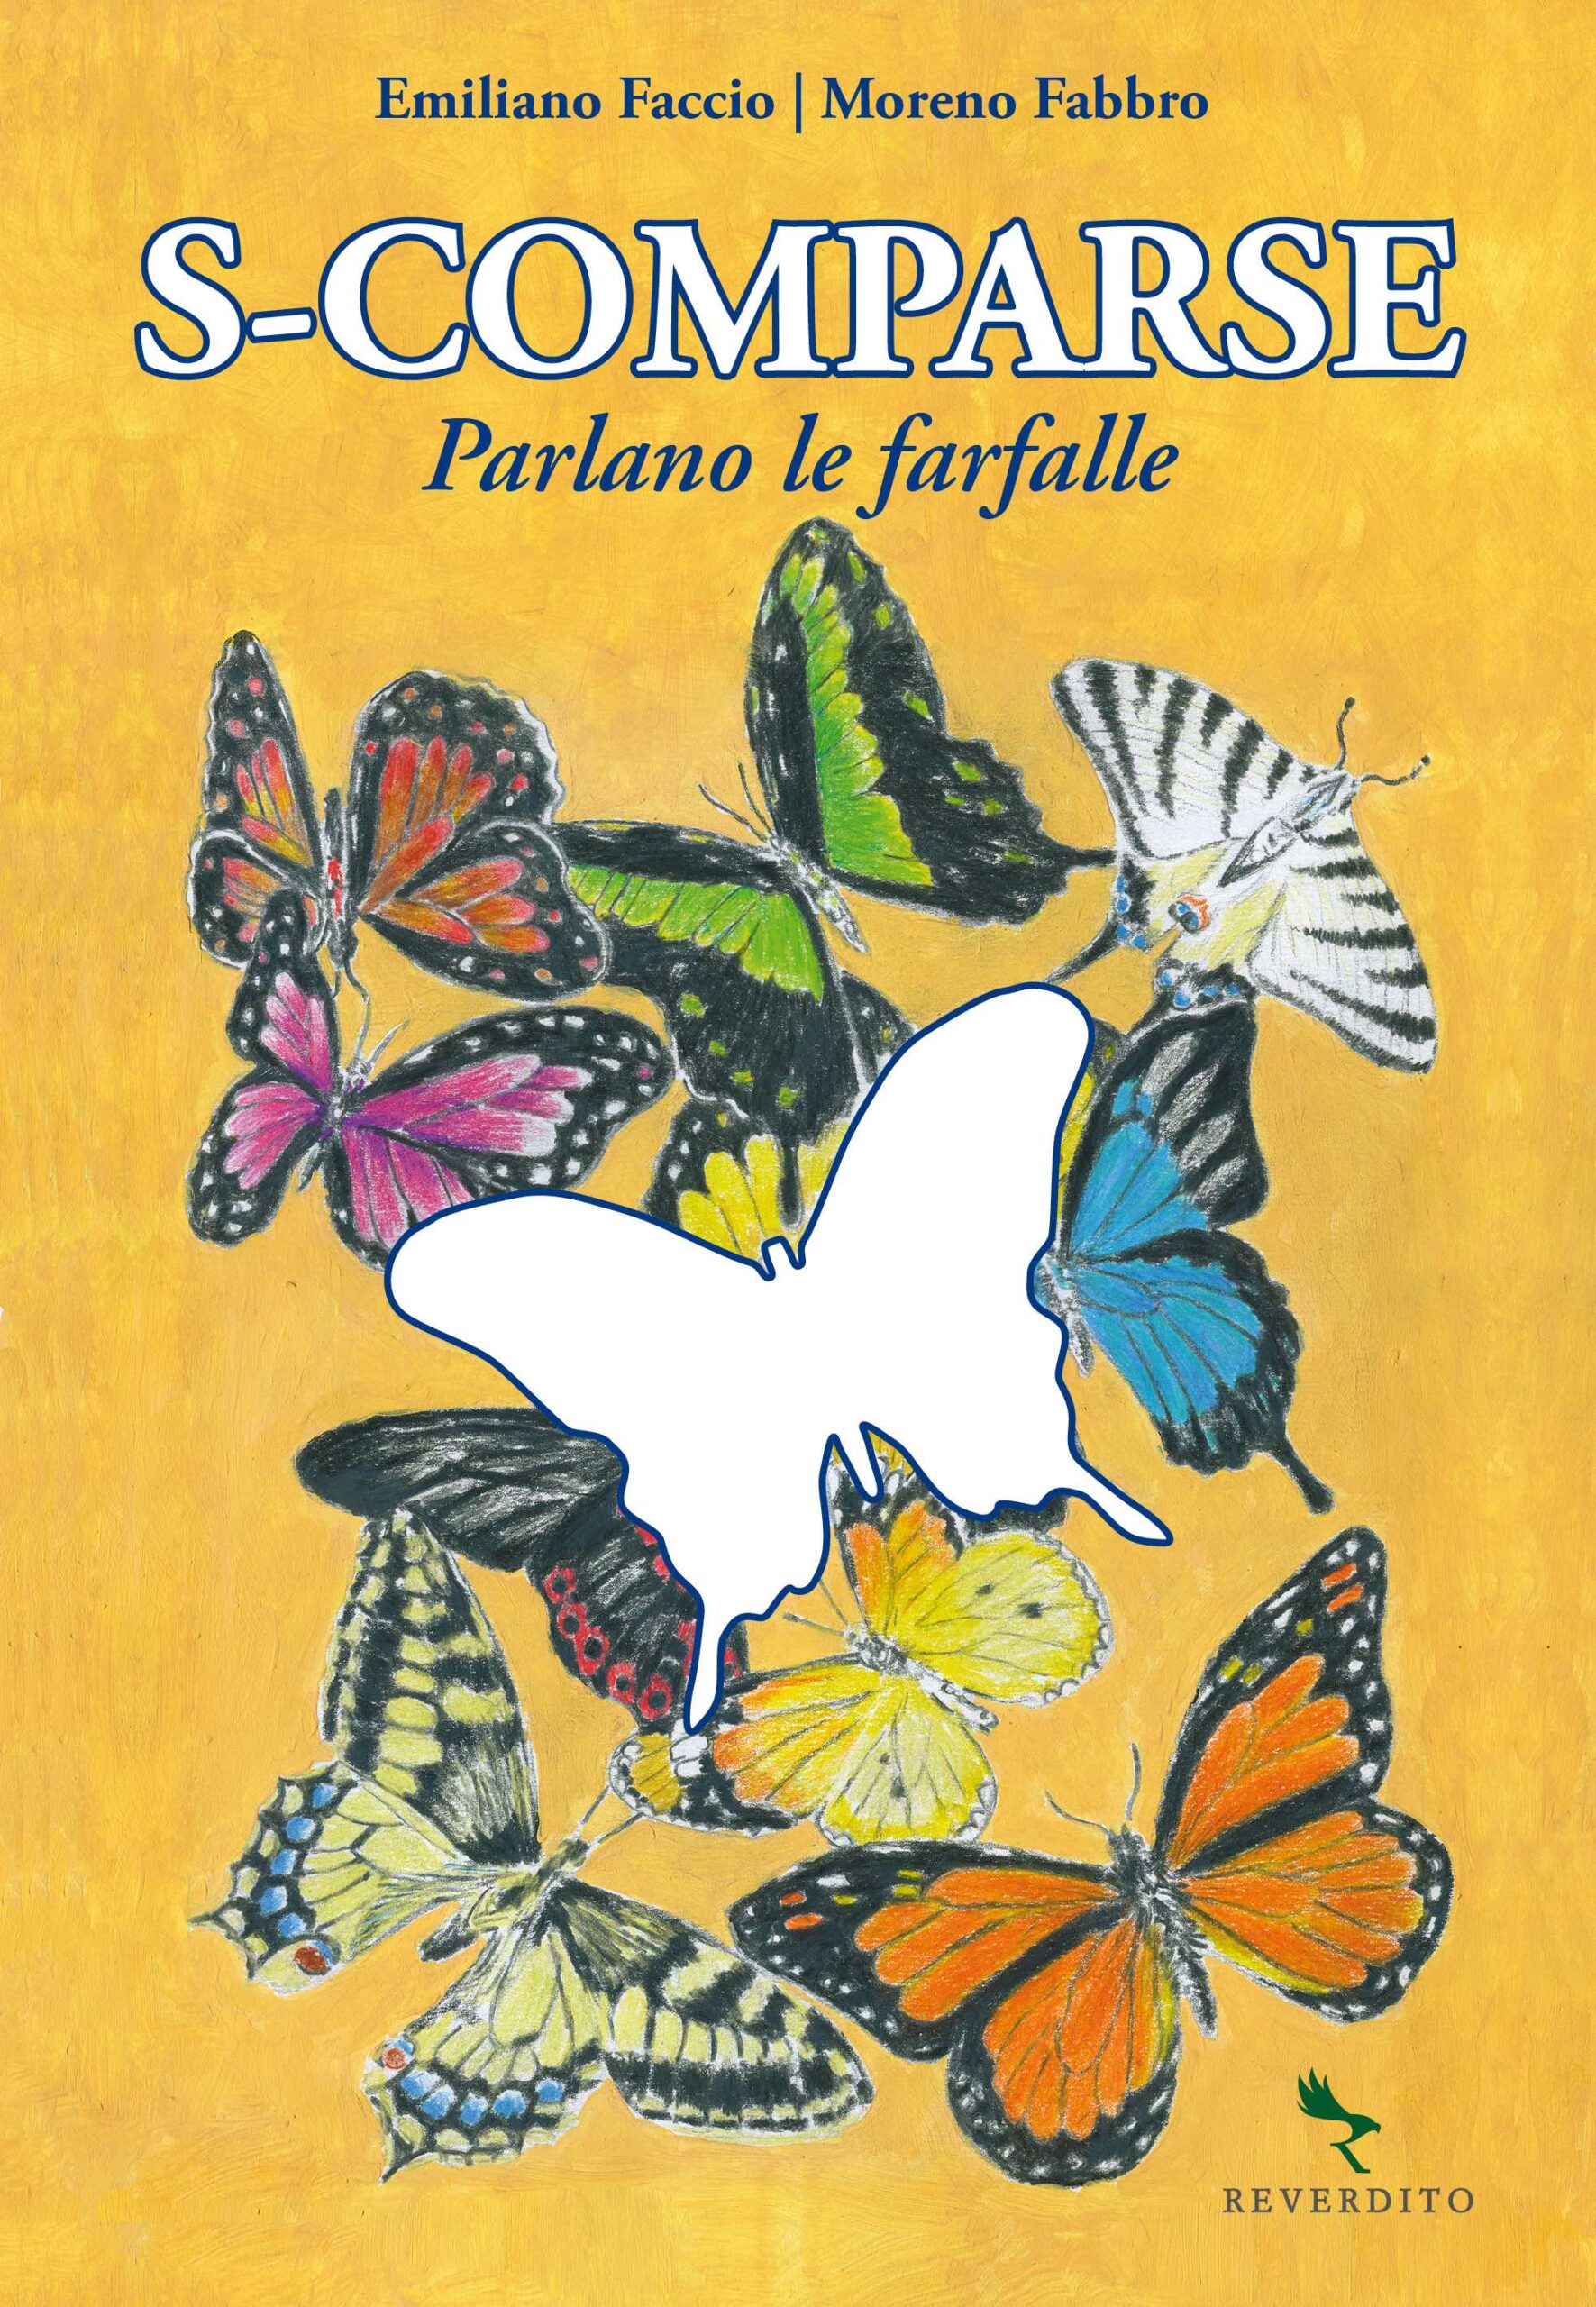 Libro L'educazione delle Farfalle Nuovo - Libri e Riviste In vendita a Roma